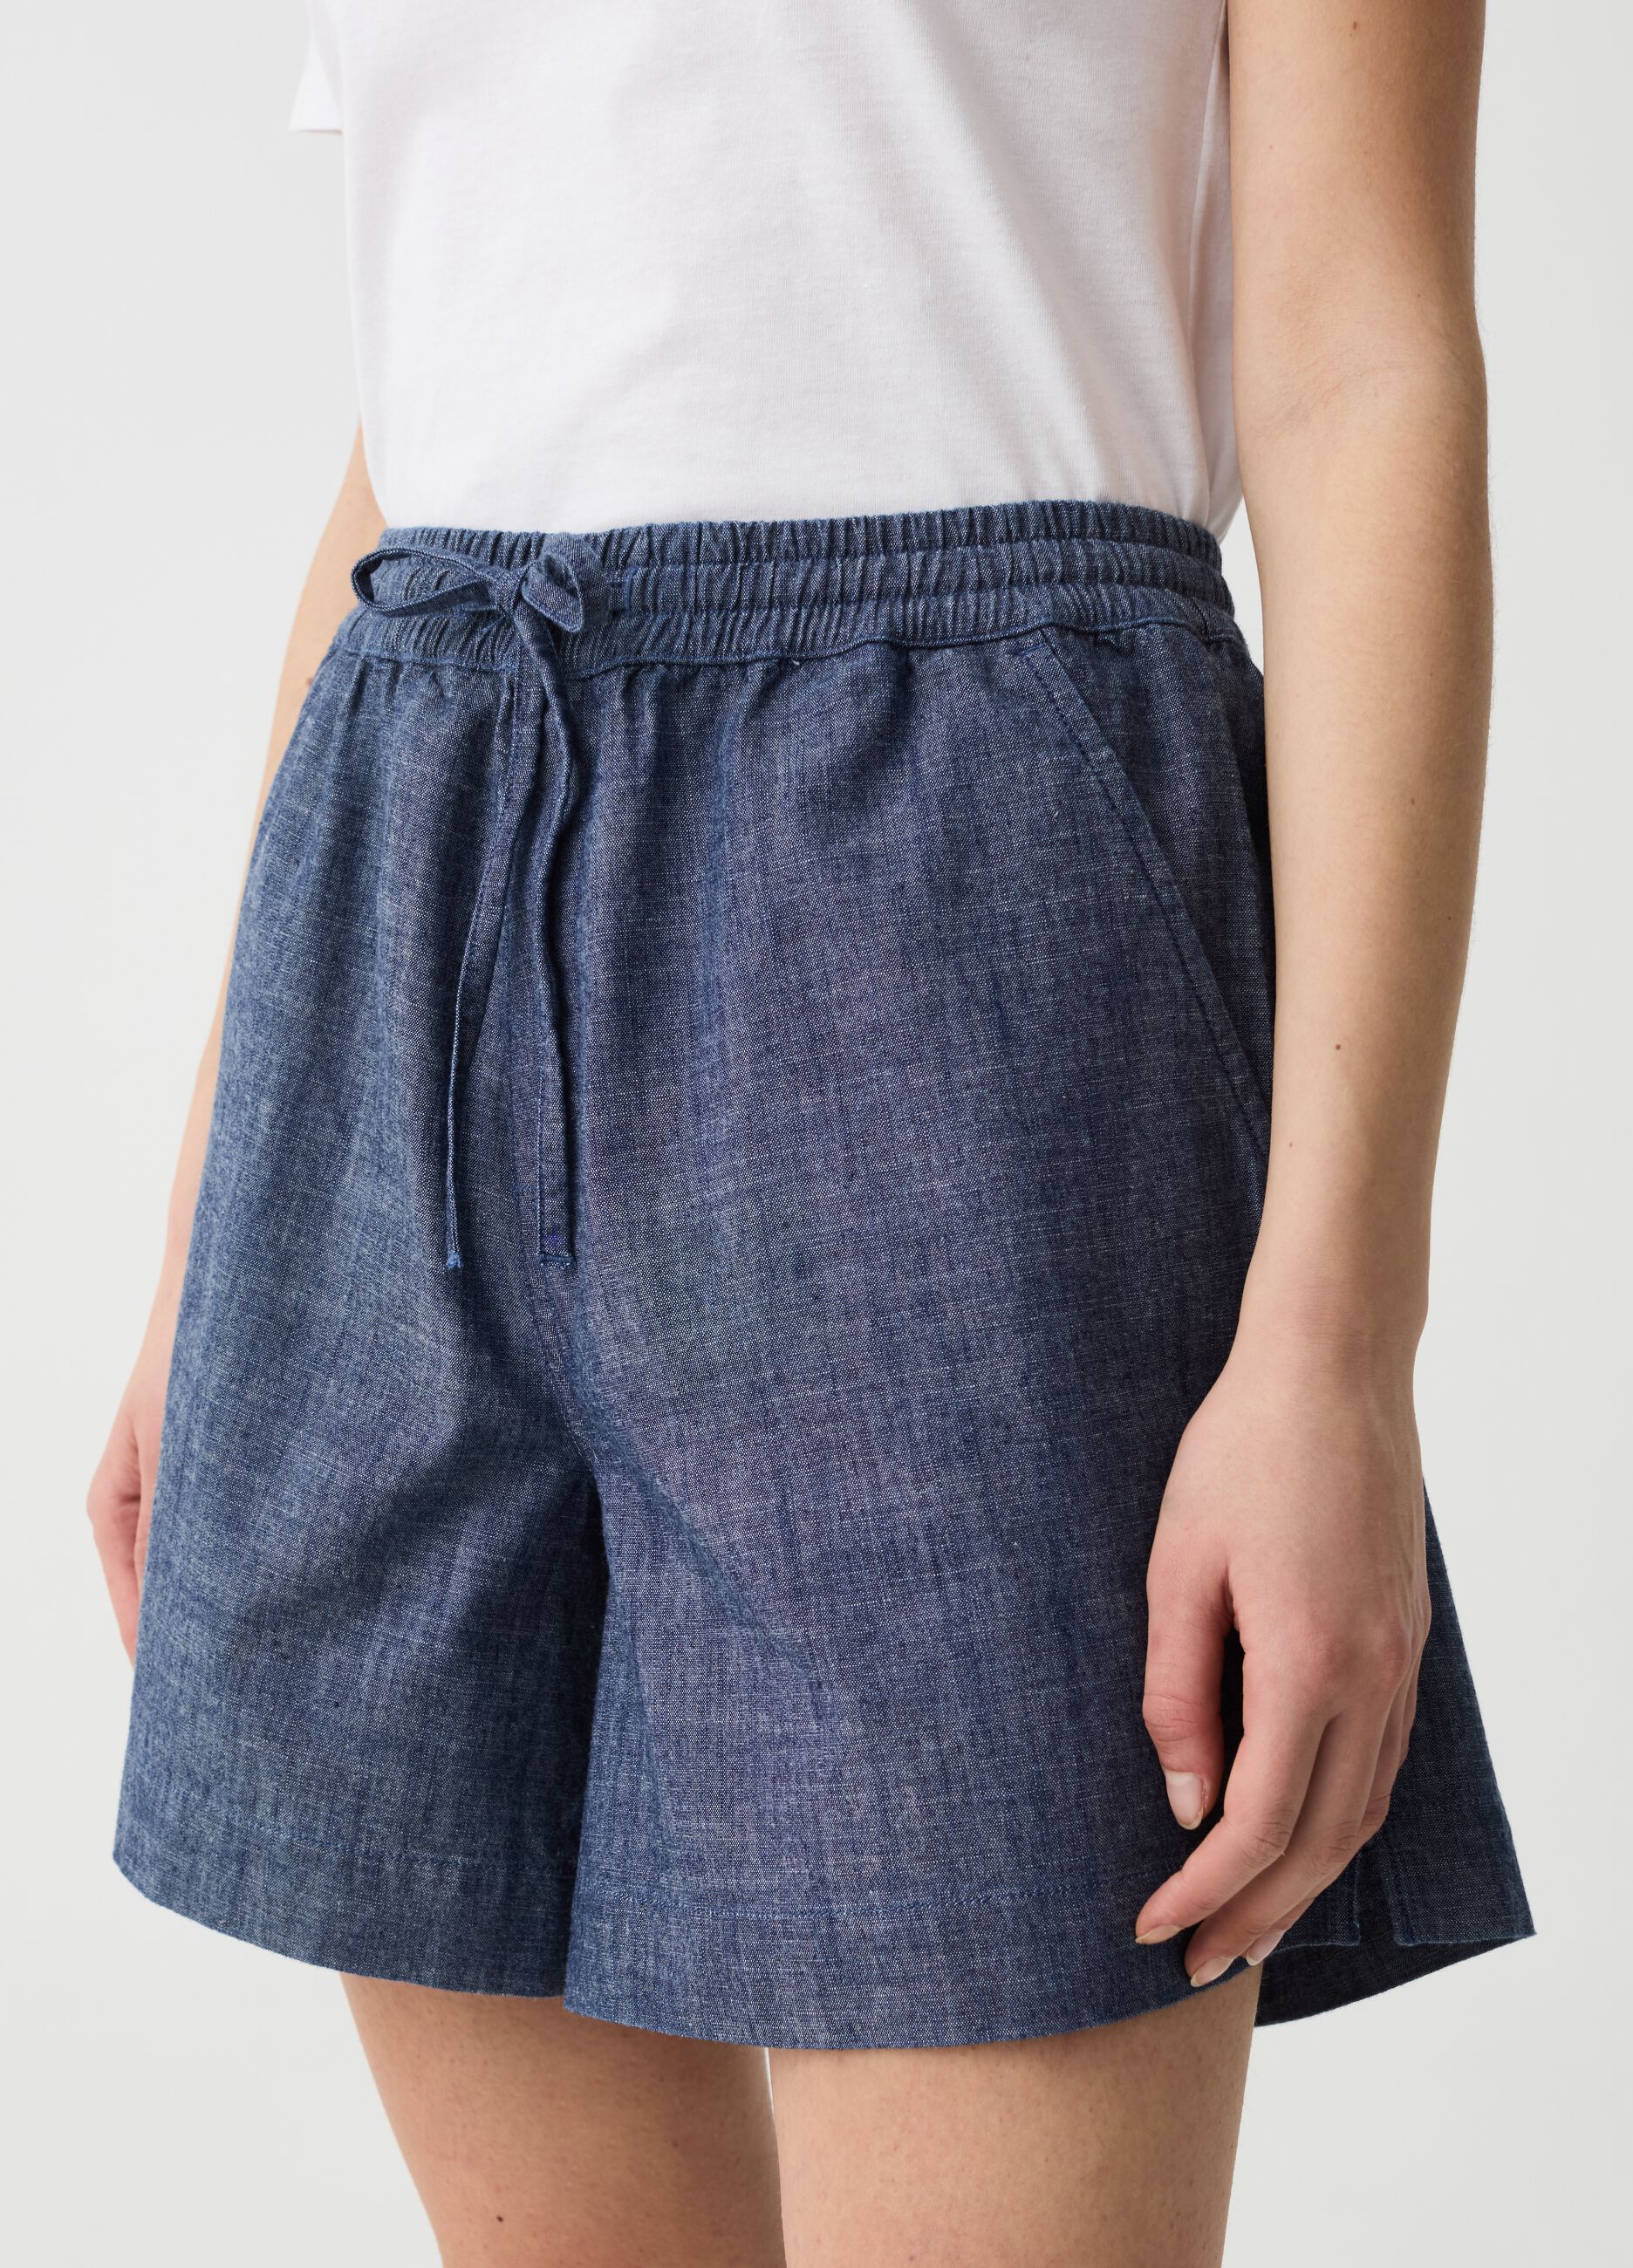 Shorts in fluid denim-effect fabric